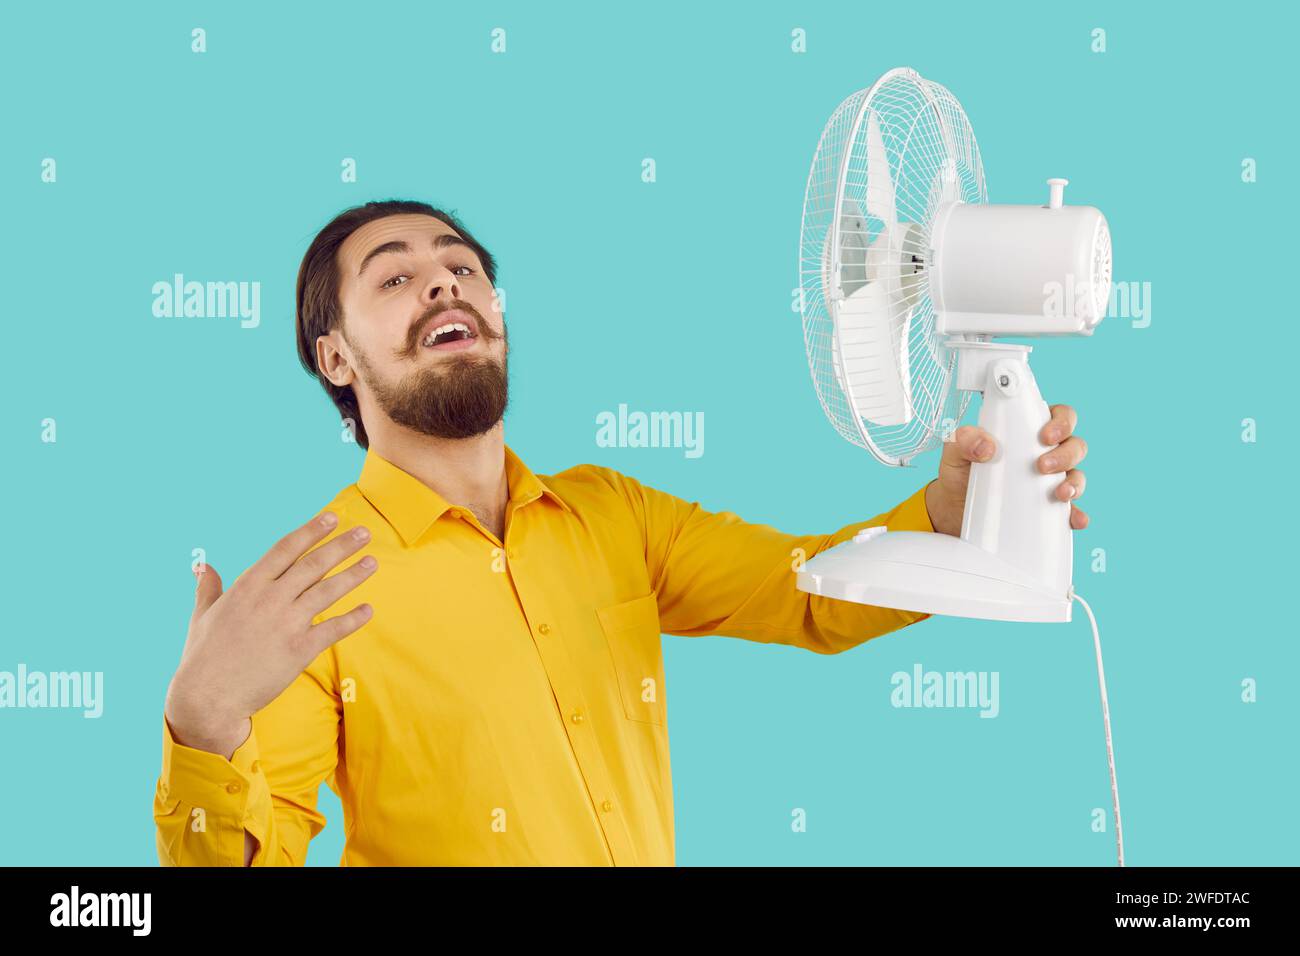 Mann mit Hilfe der kalten Luft vom elektrischen Ventilator entweicht aus der Sommerhitze auf türkisfarbenem Hintergrund. Stockfoto